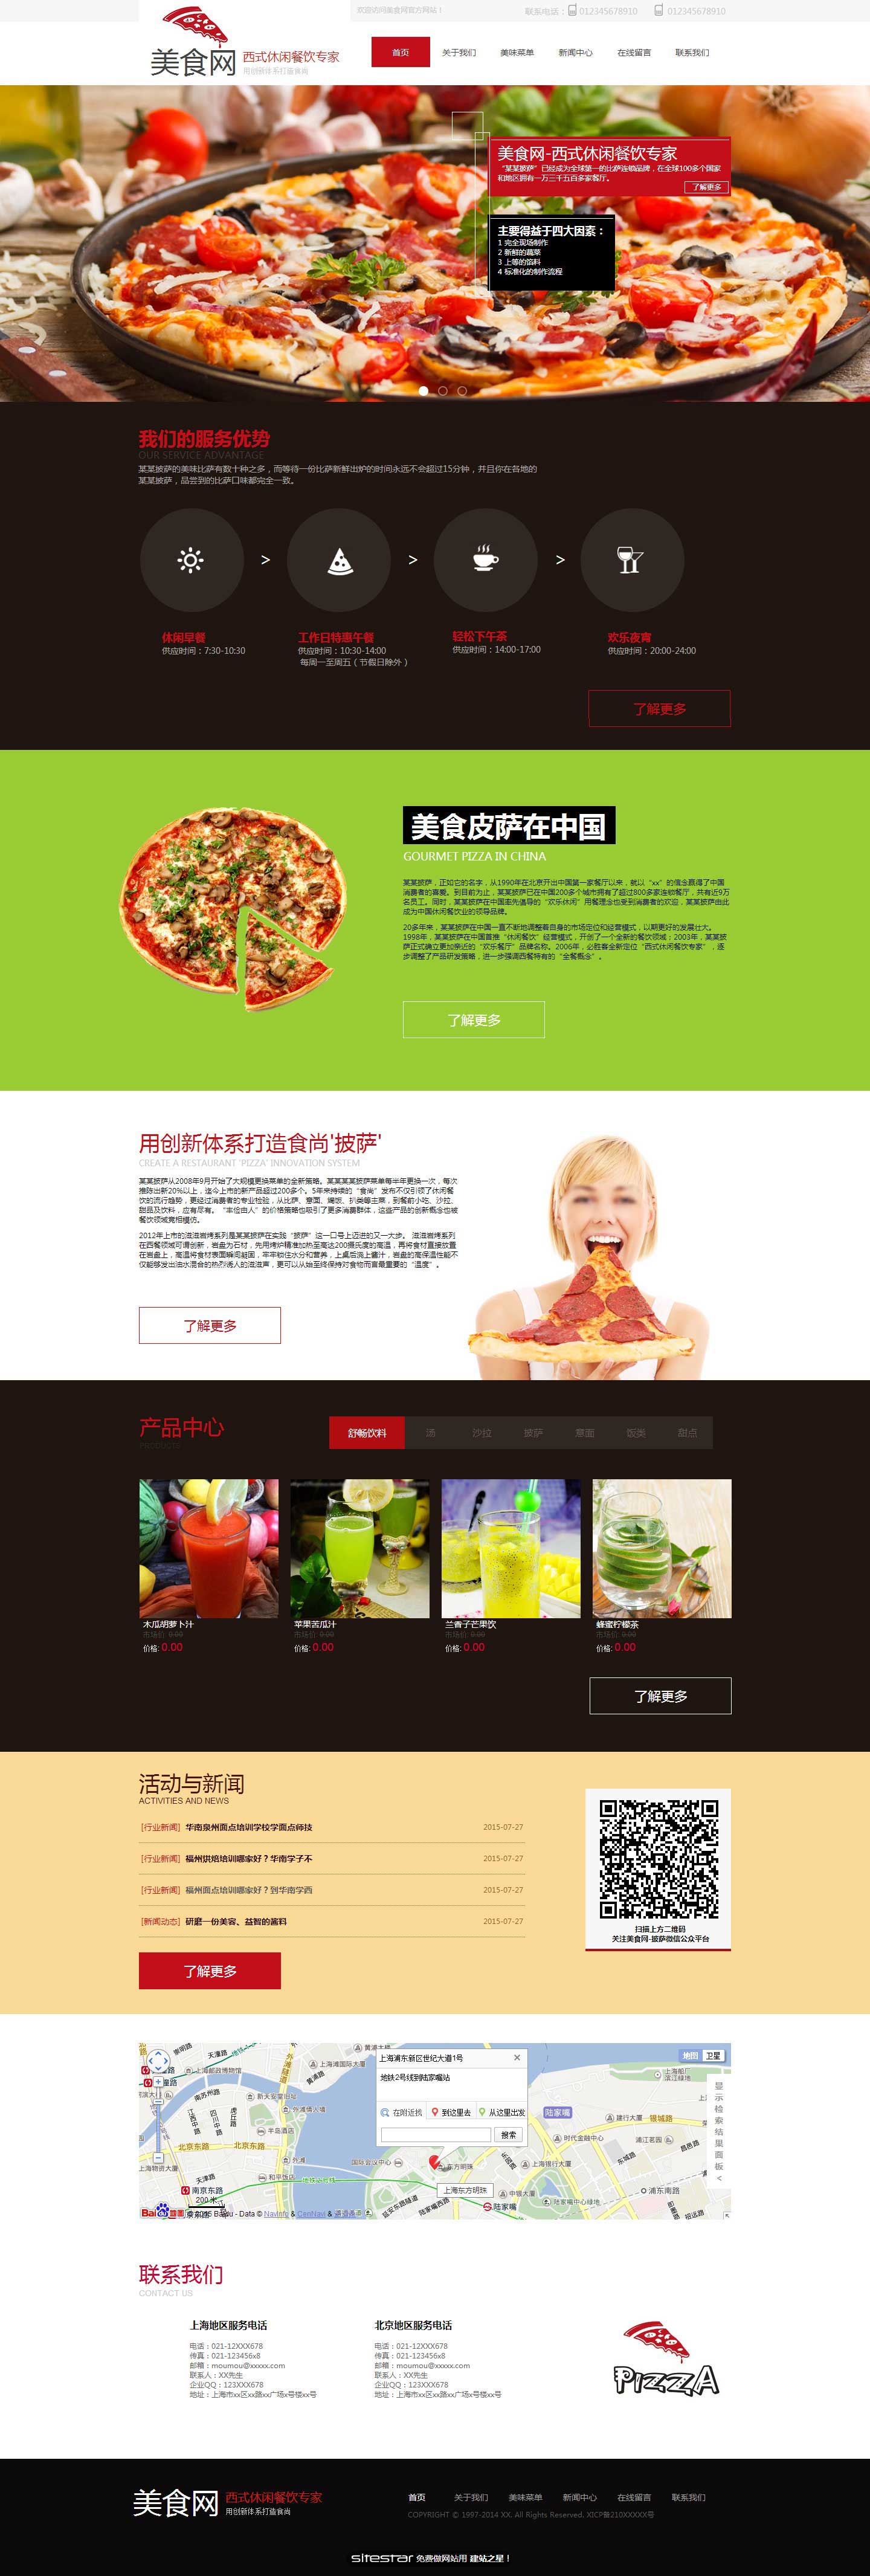 餐饮网站模板-food-55